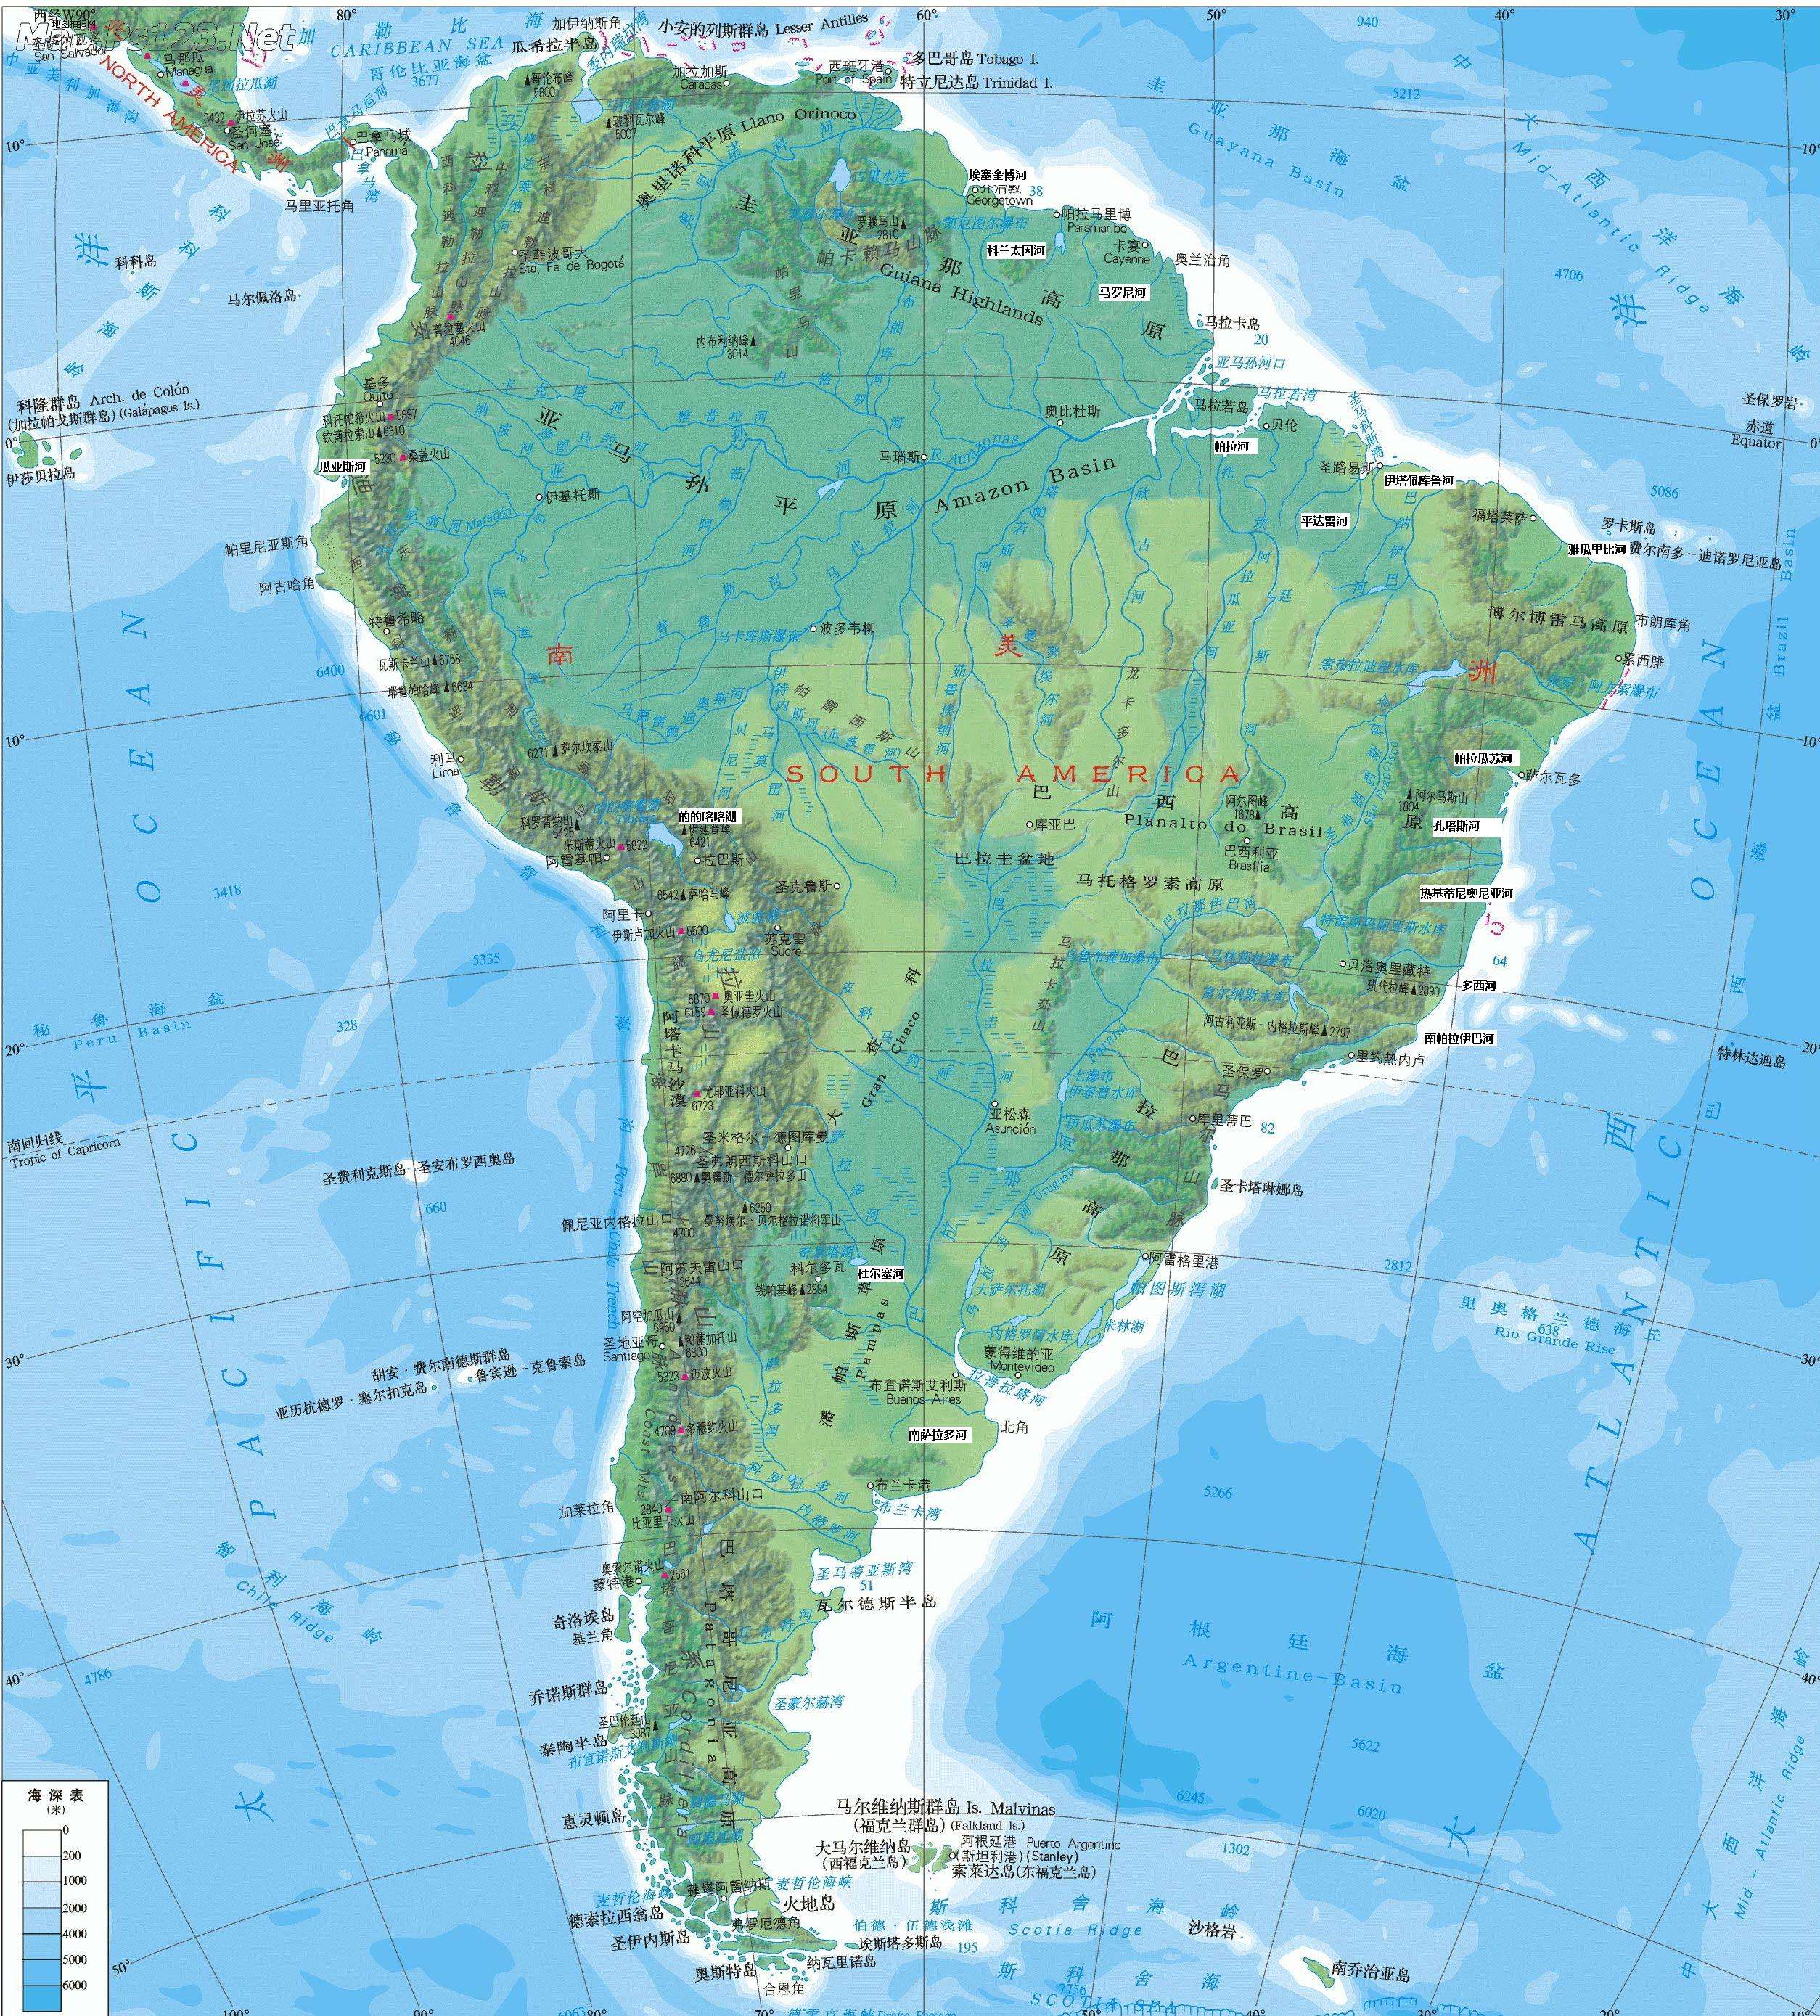 南美洲的地缘条件好不好?为什么出现不了什么大城市?